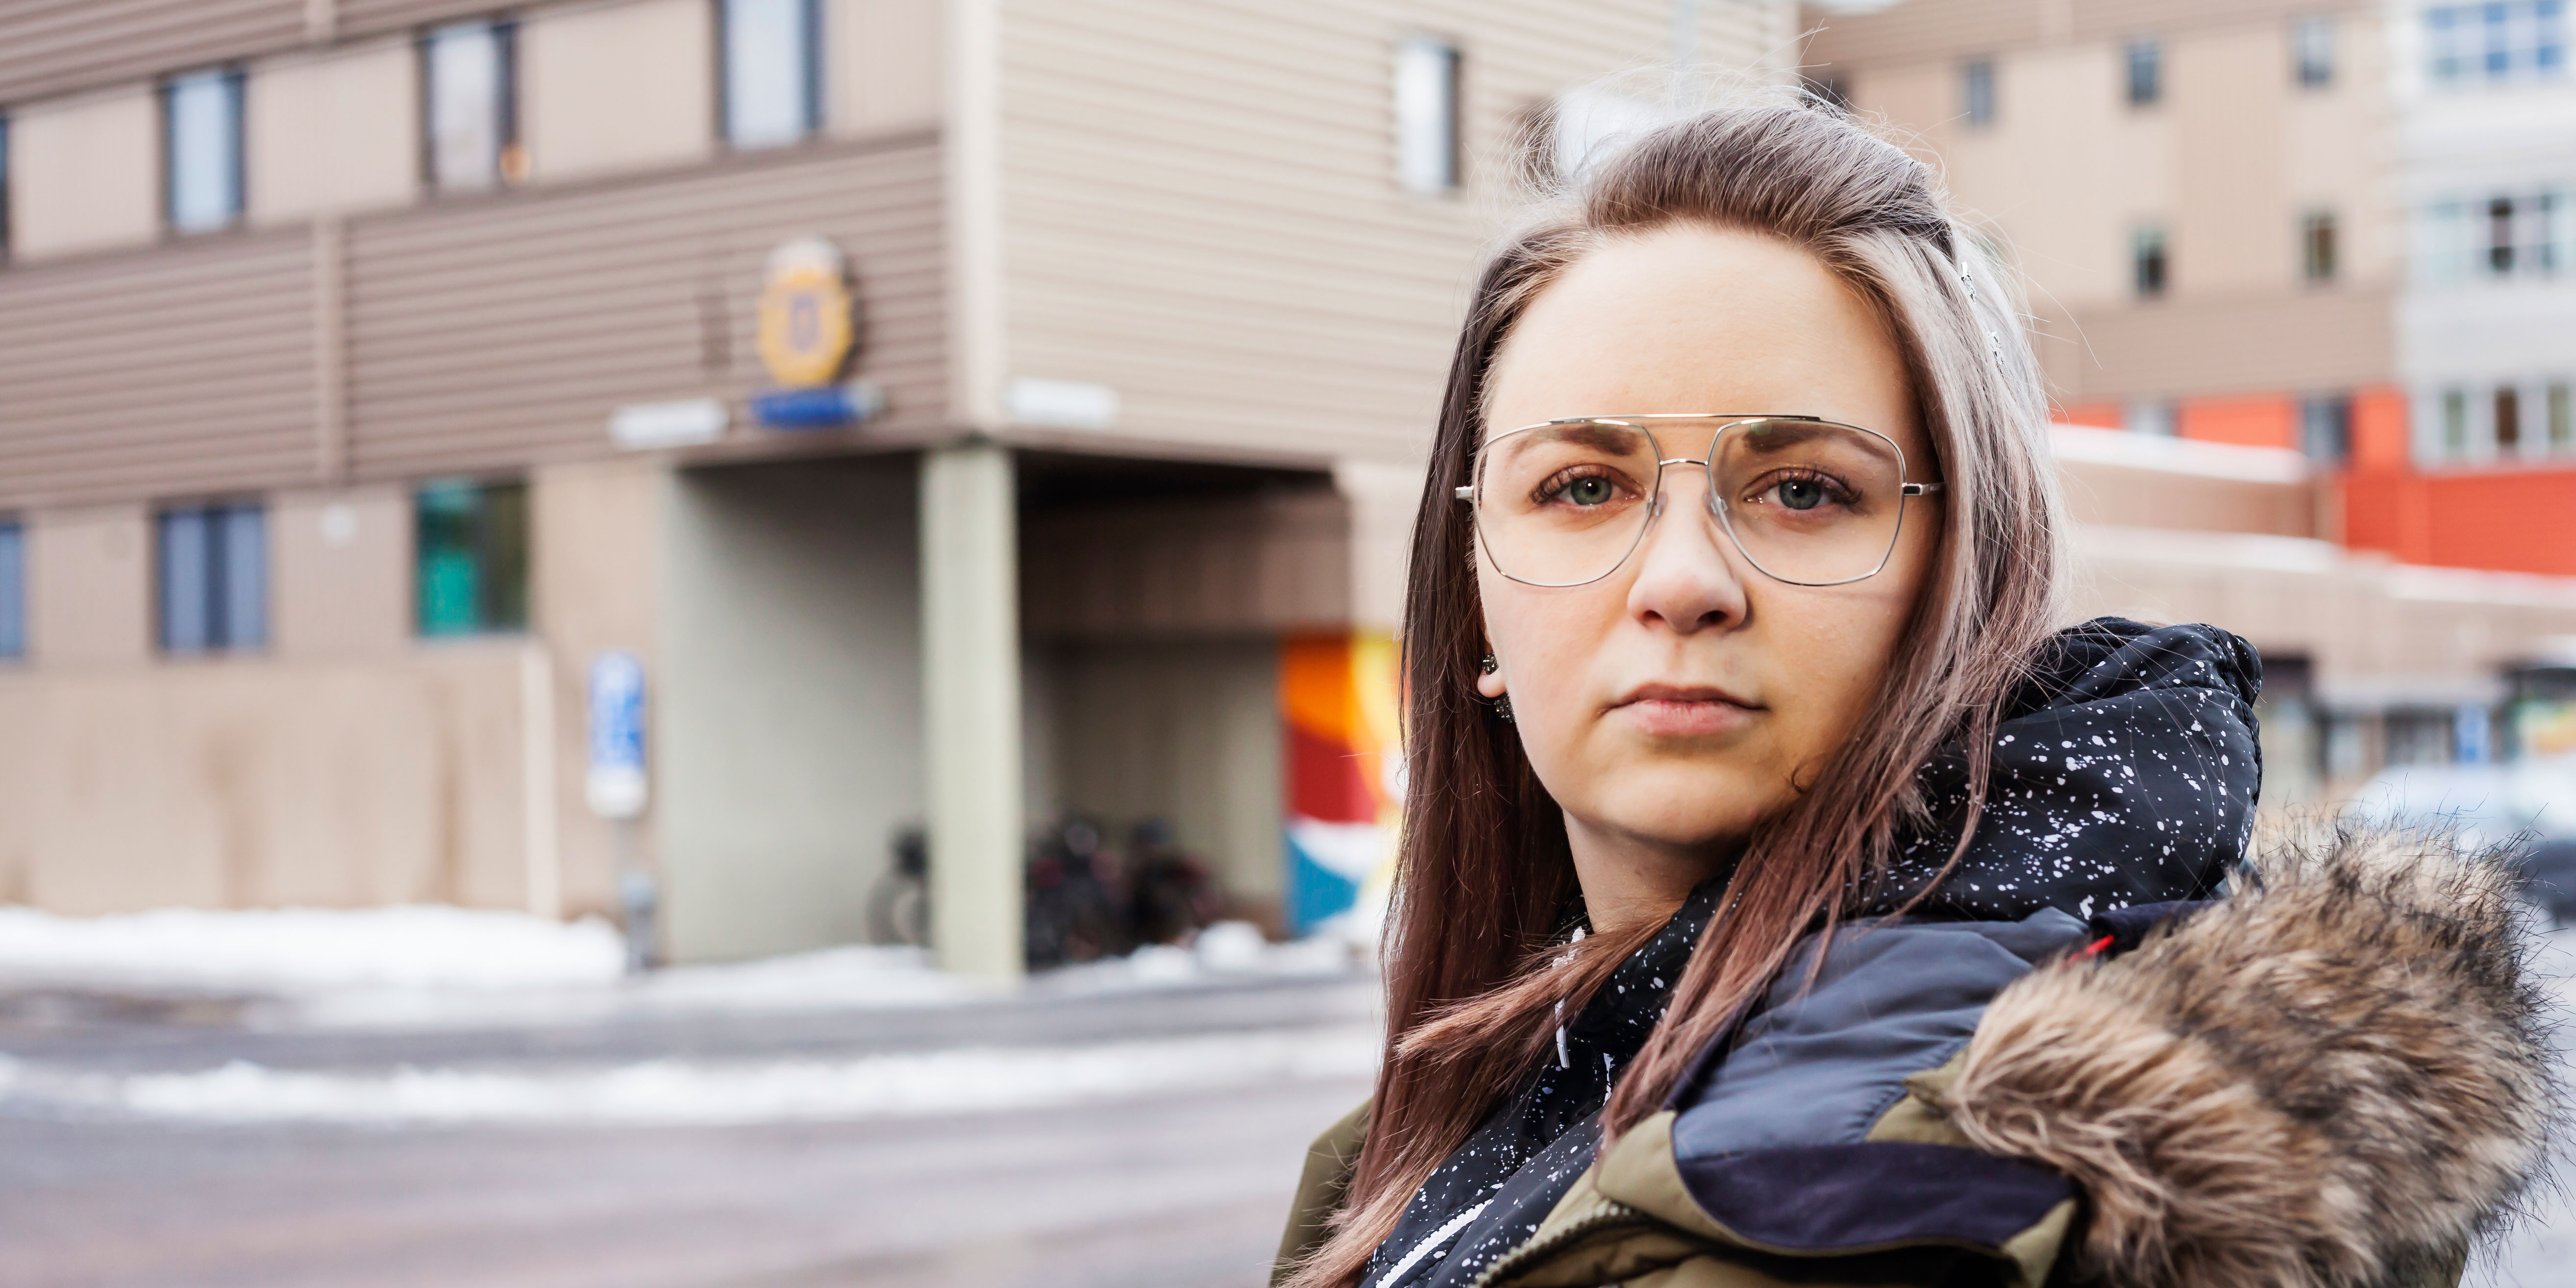 Johanna Lindgren kände att hon passade för jobbet på Polisens kontaktcenter i Luleå. ”Med min erfarenhet inom vården kunde jag få bra samtal med dem som ringde in. Jag kan bemöta människor i olika åldrar och utsatta situationer”, säger hon.